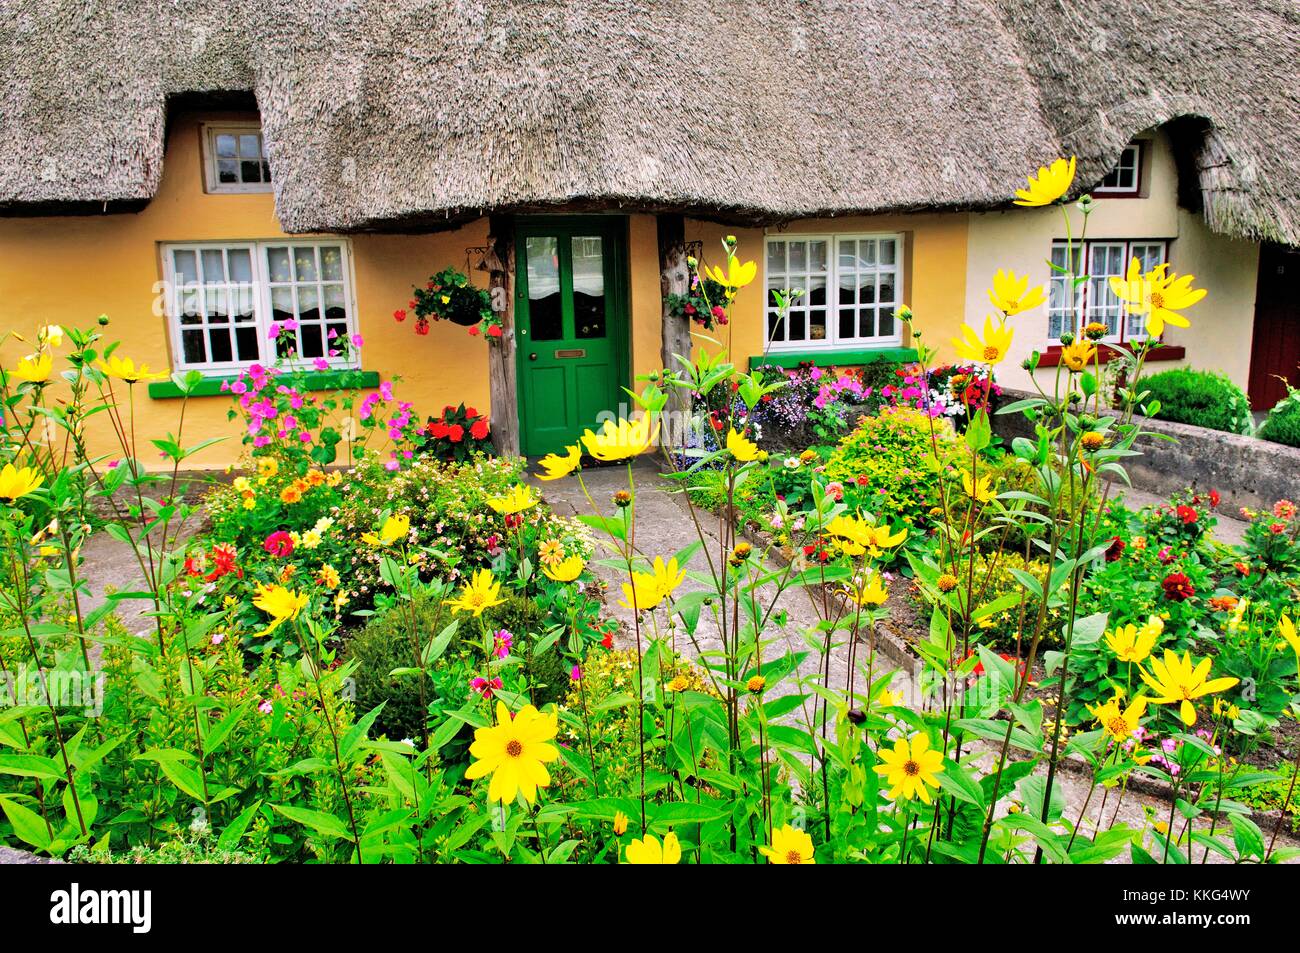 Traditionnel pittoresque chaumière avec jardin fleurs d'été de la ville d'Adare, dans le comté de Limerick, Irlande Banque D'Images